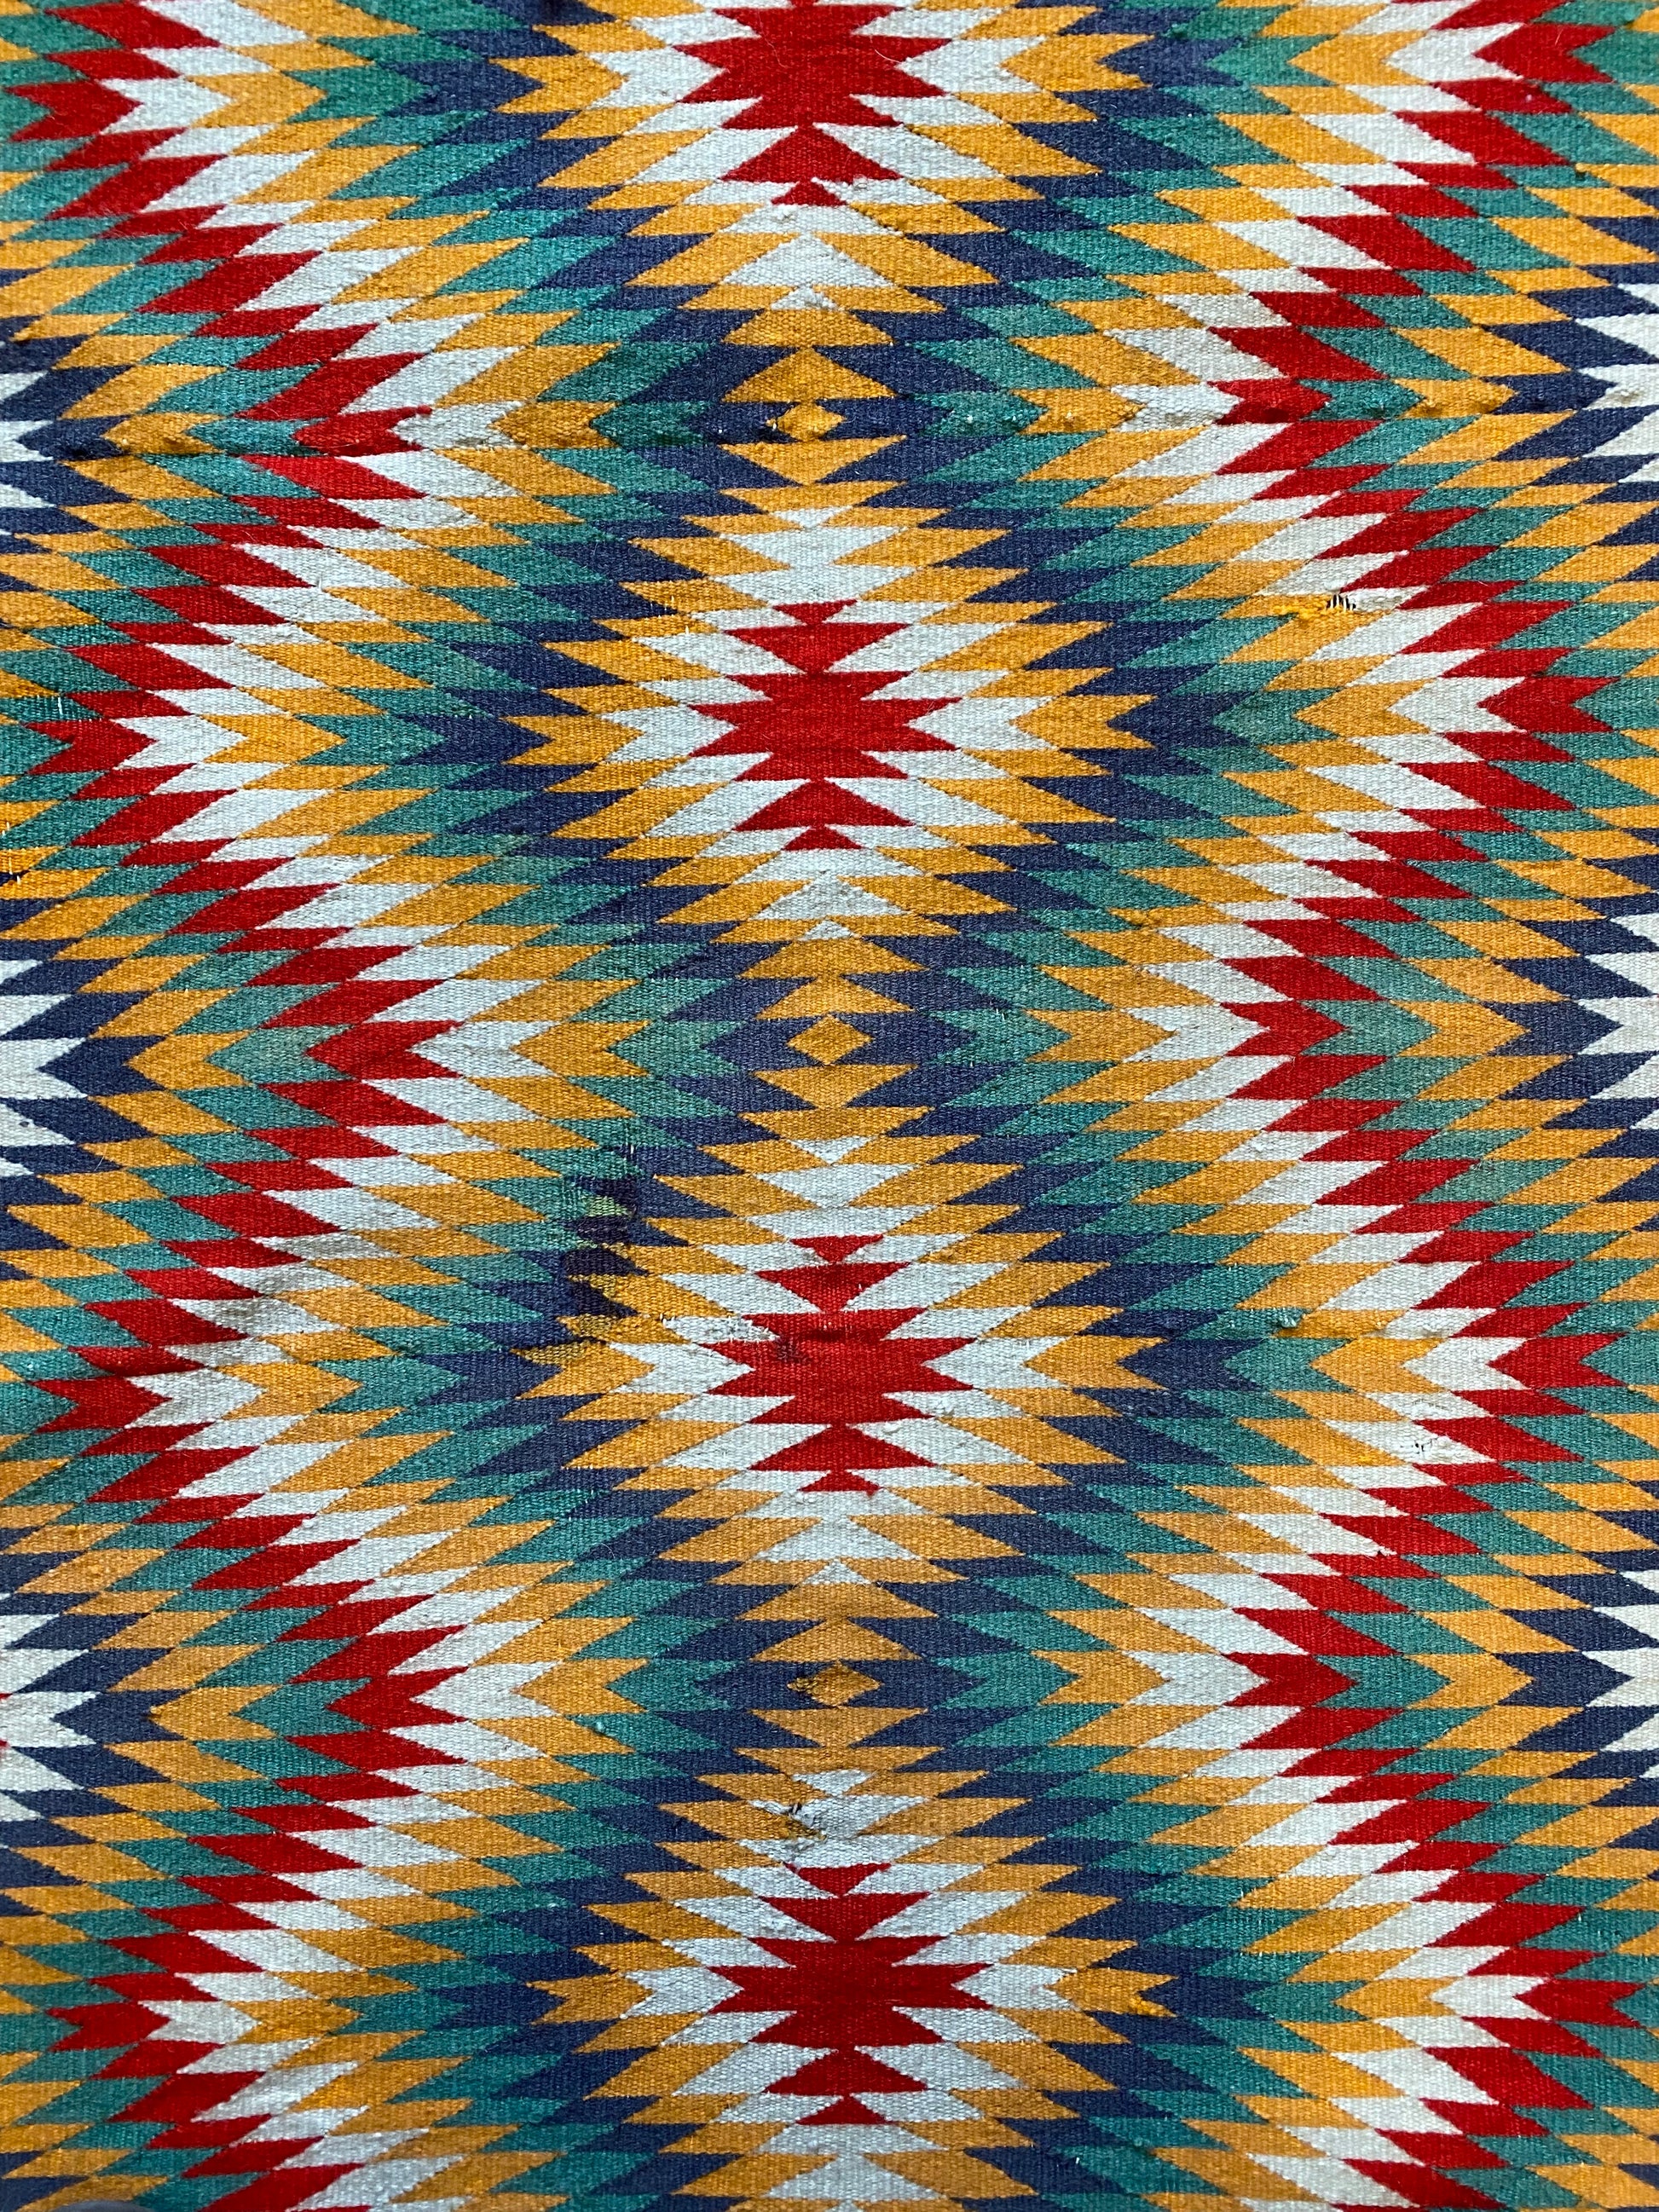 Antique Germantown Eye Dazzler Navajo Weaving, navajo rug for sale, authentic navajo weaving, telluride furnishings, telluride art gallery